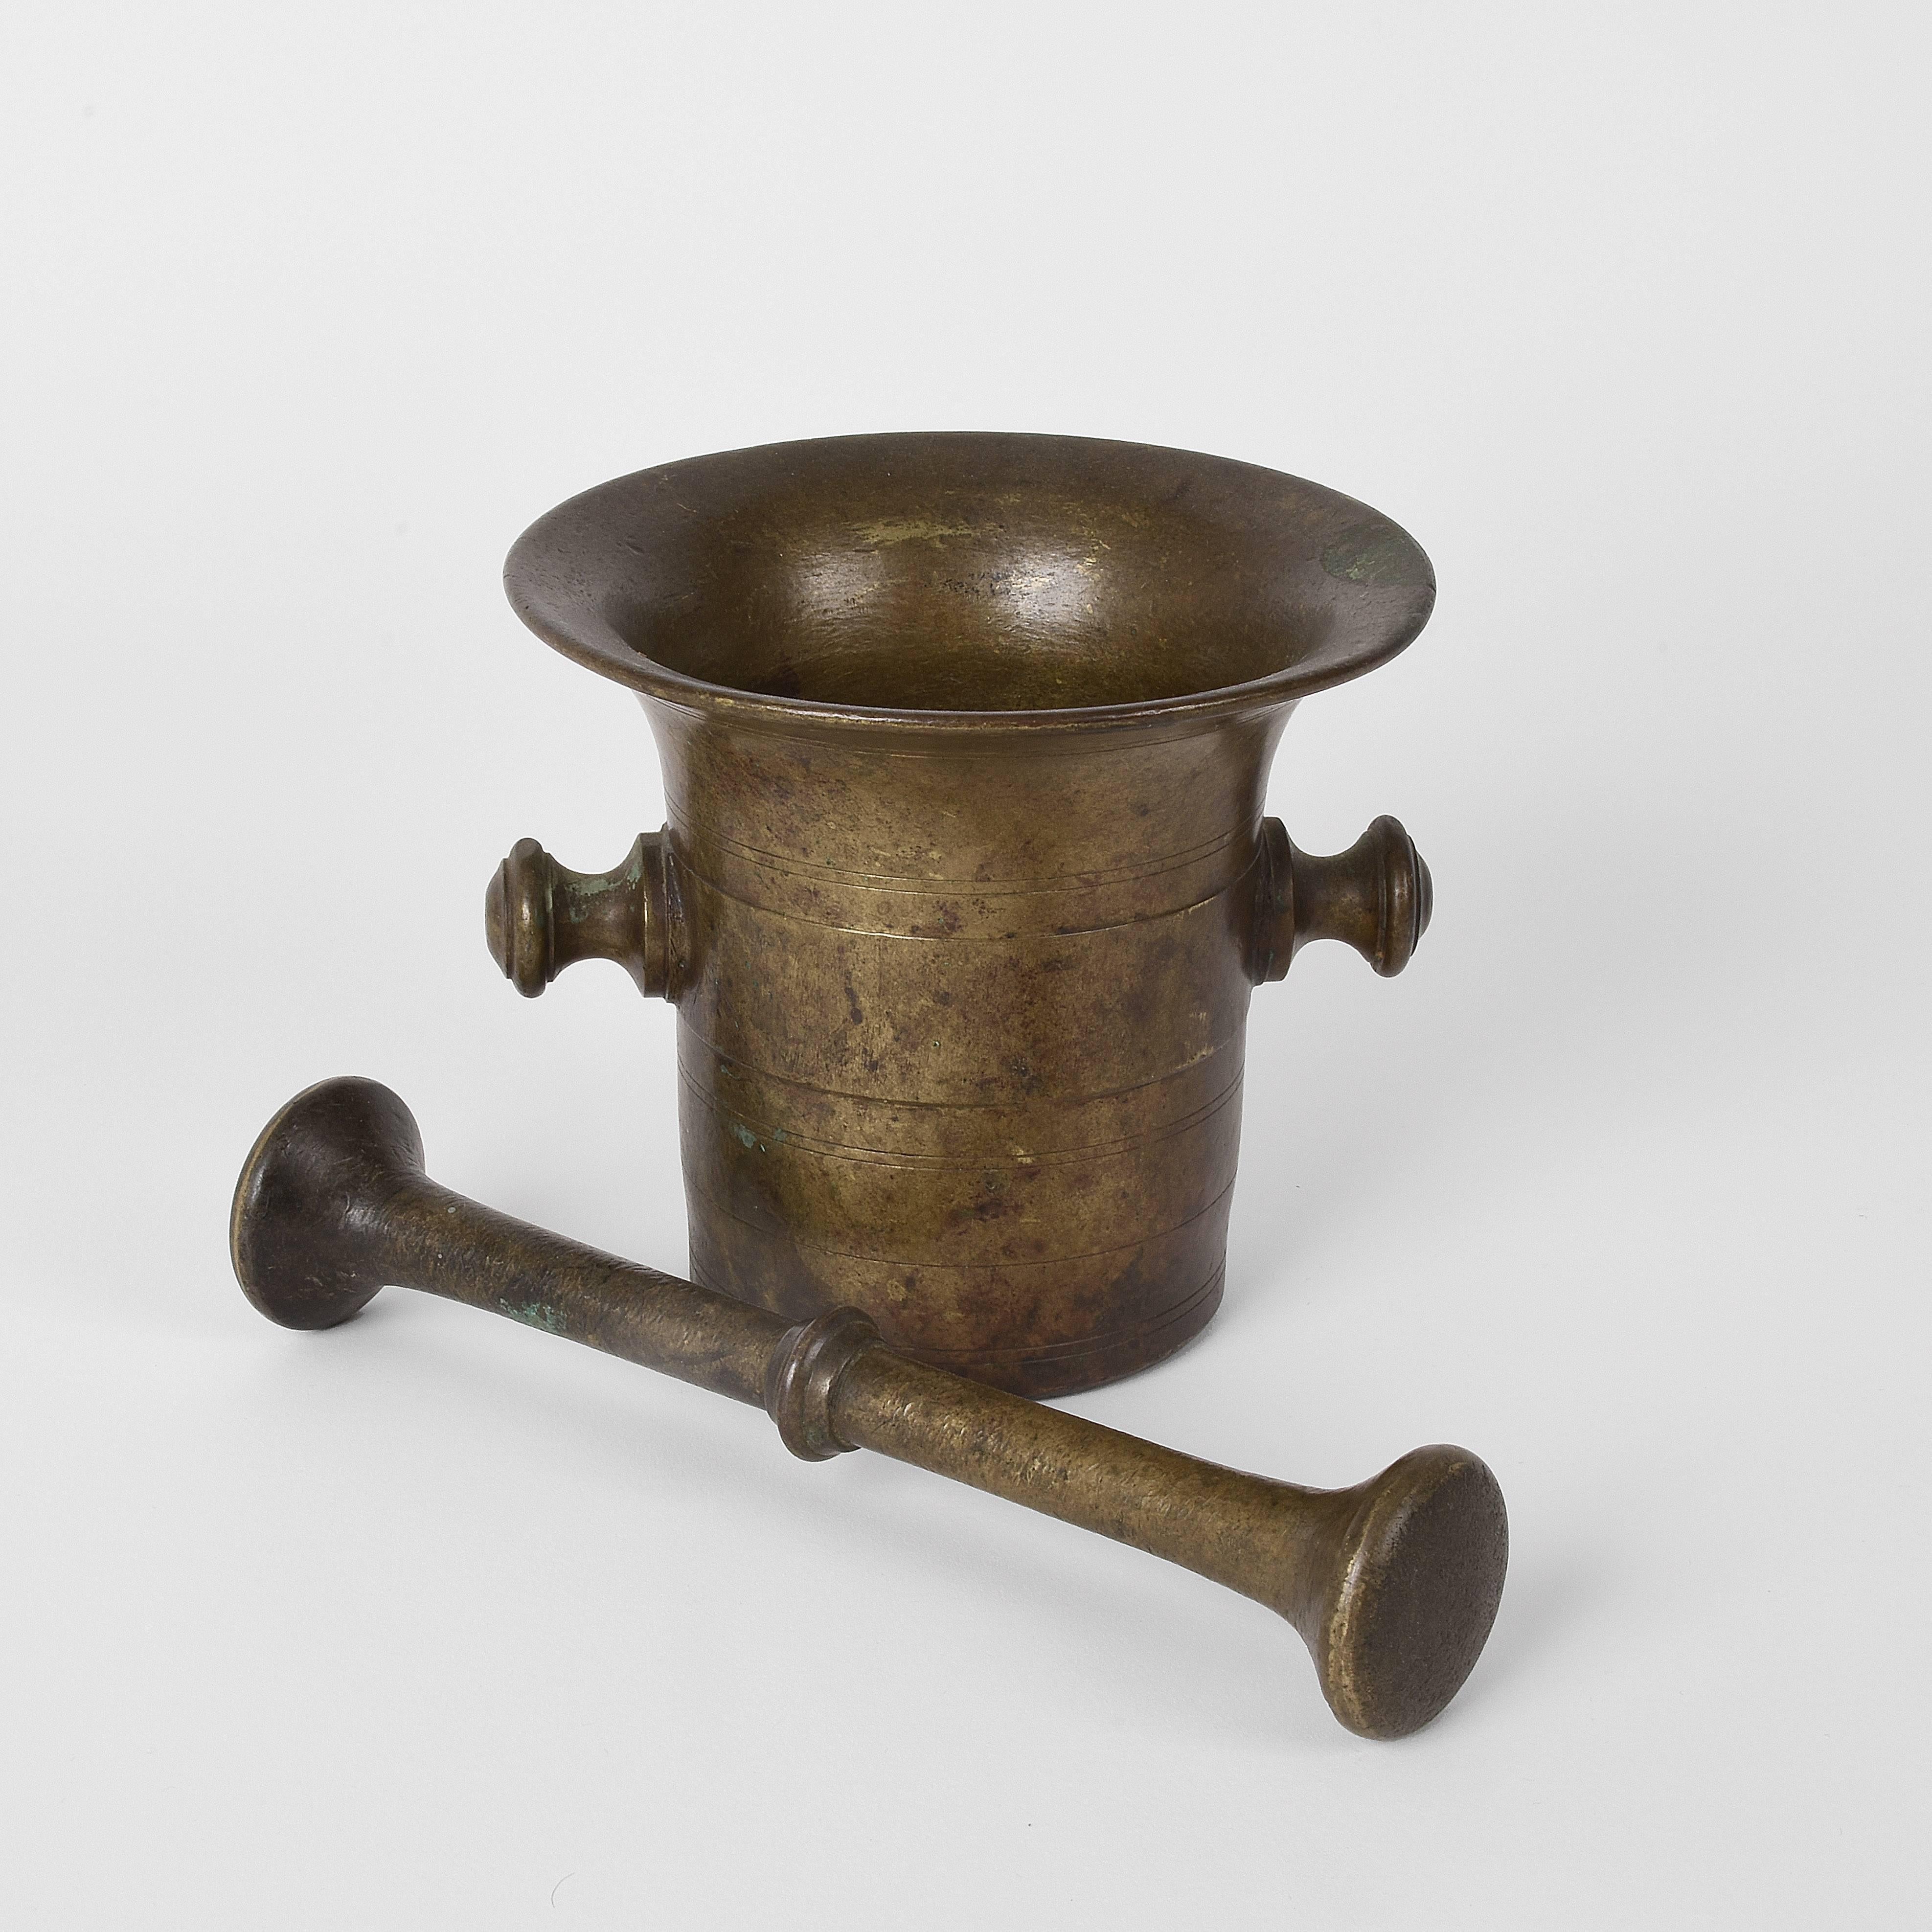 Antique bronze mortar. Handmade with pestle. Original patina
Pestle height 9.05 inc.